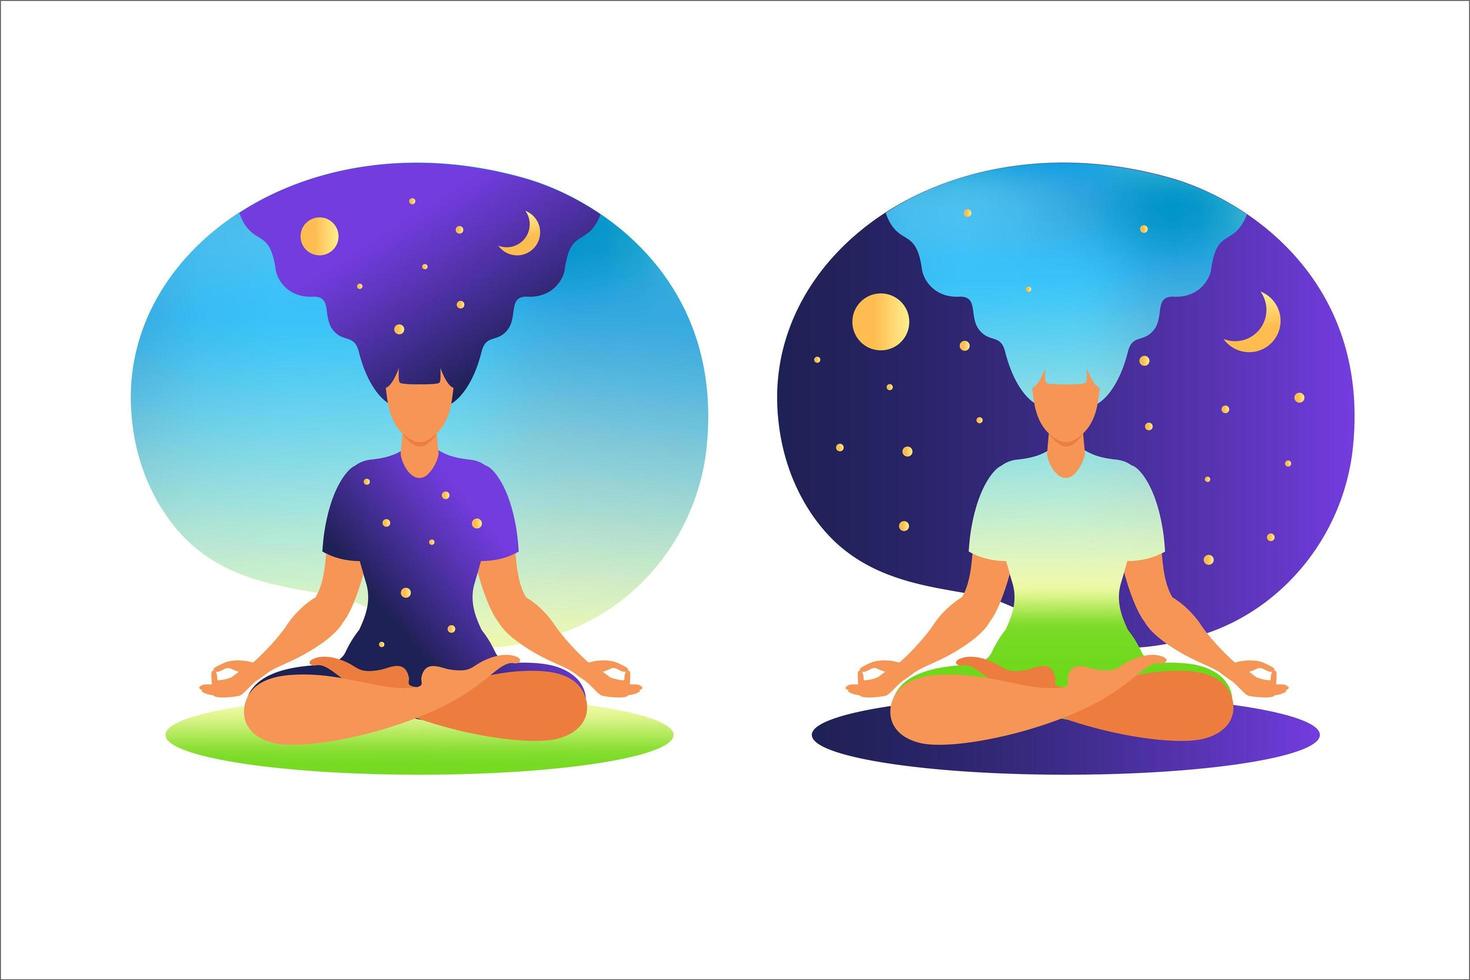 vrouw mediteren met natuur achtergrond en haar haar omhoog. meditatie concept. vrouw zitten in lotushouding meditatie beoefenen. in lotushouding. vectorillustratie in vlakke stijl. vector